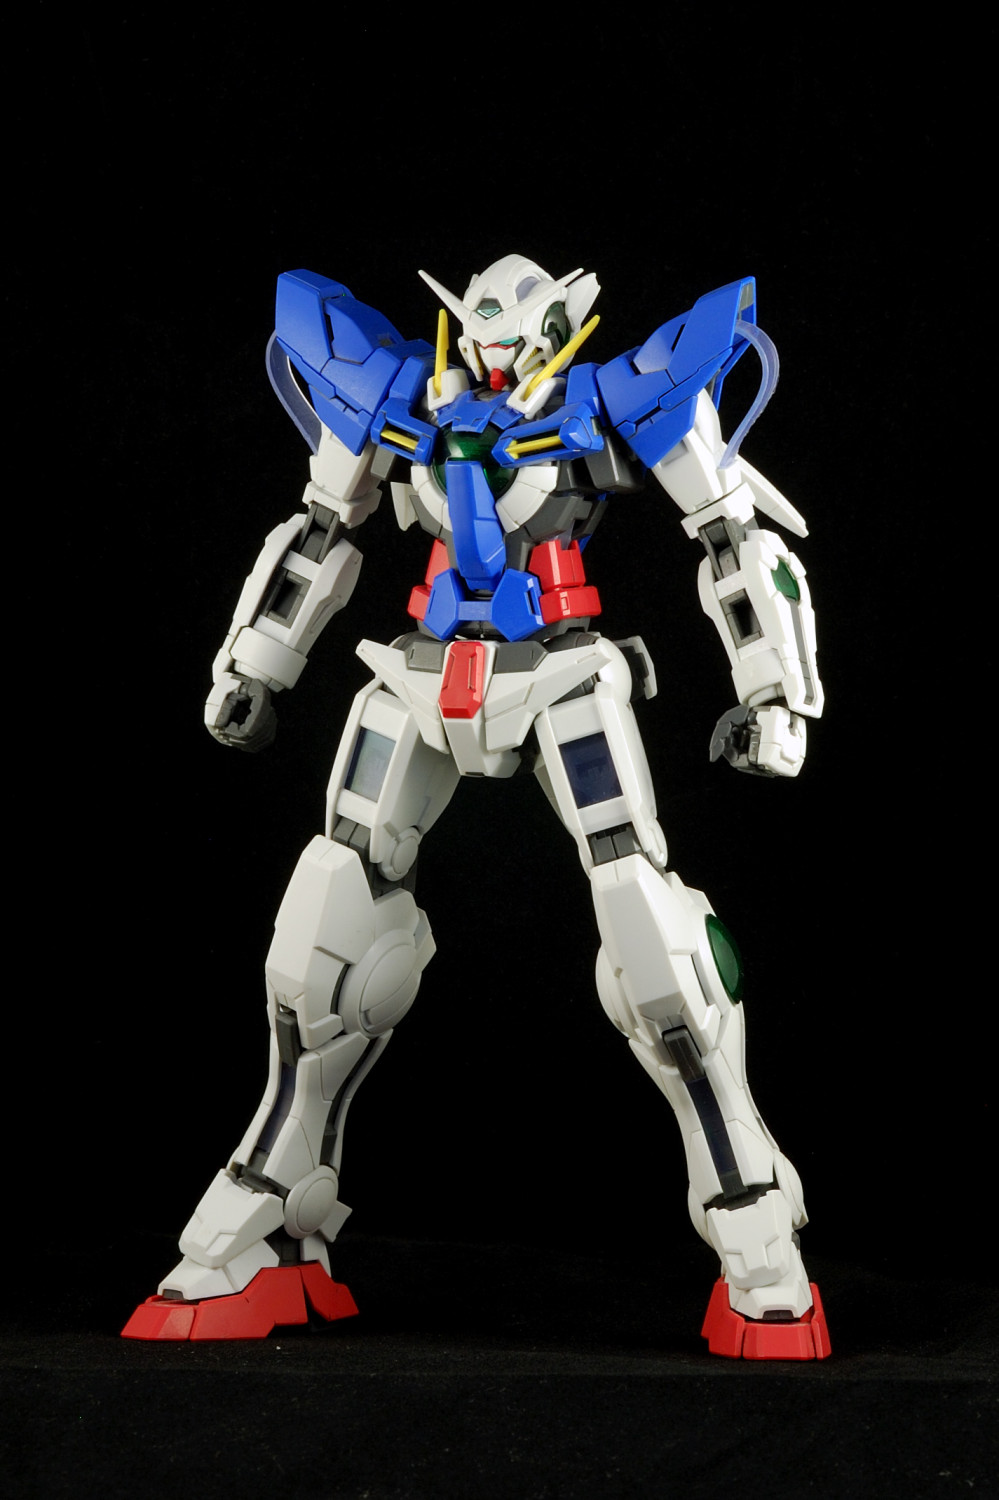 MG 1/100 Gundam Exia Review